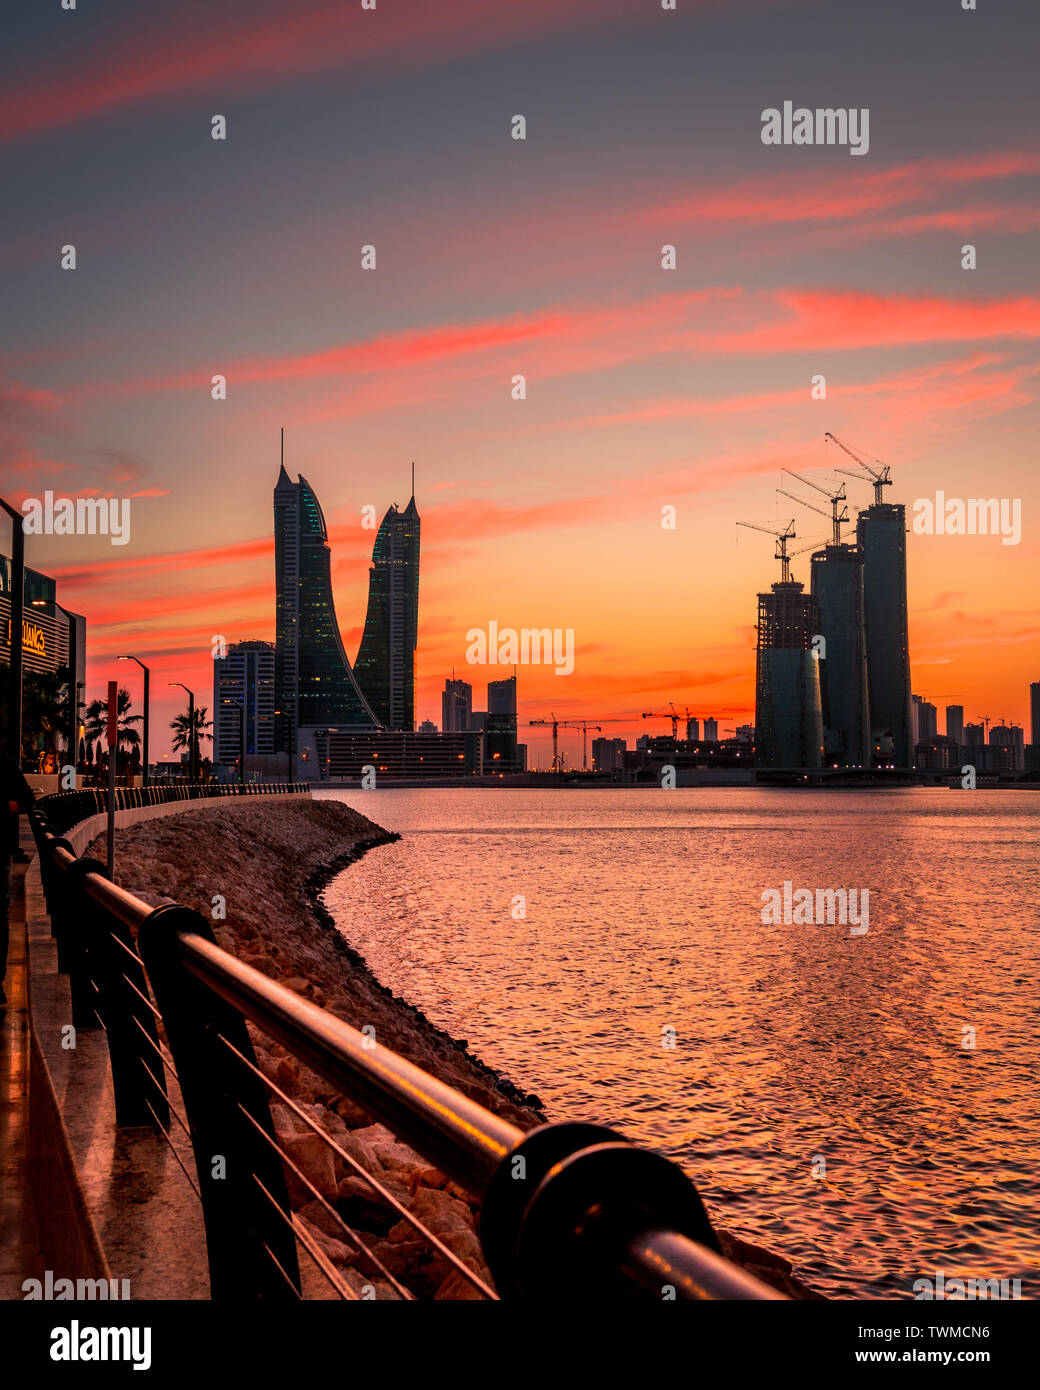 Vue du coucher de soleil de Bahreïn Bahreïn avec Bay skyline Banque D'Images